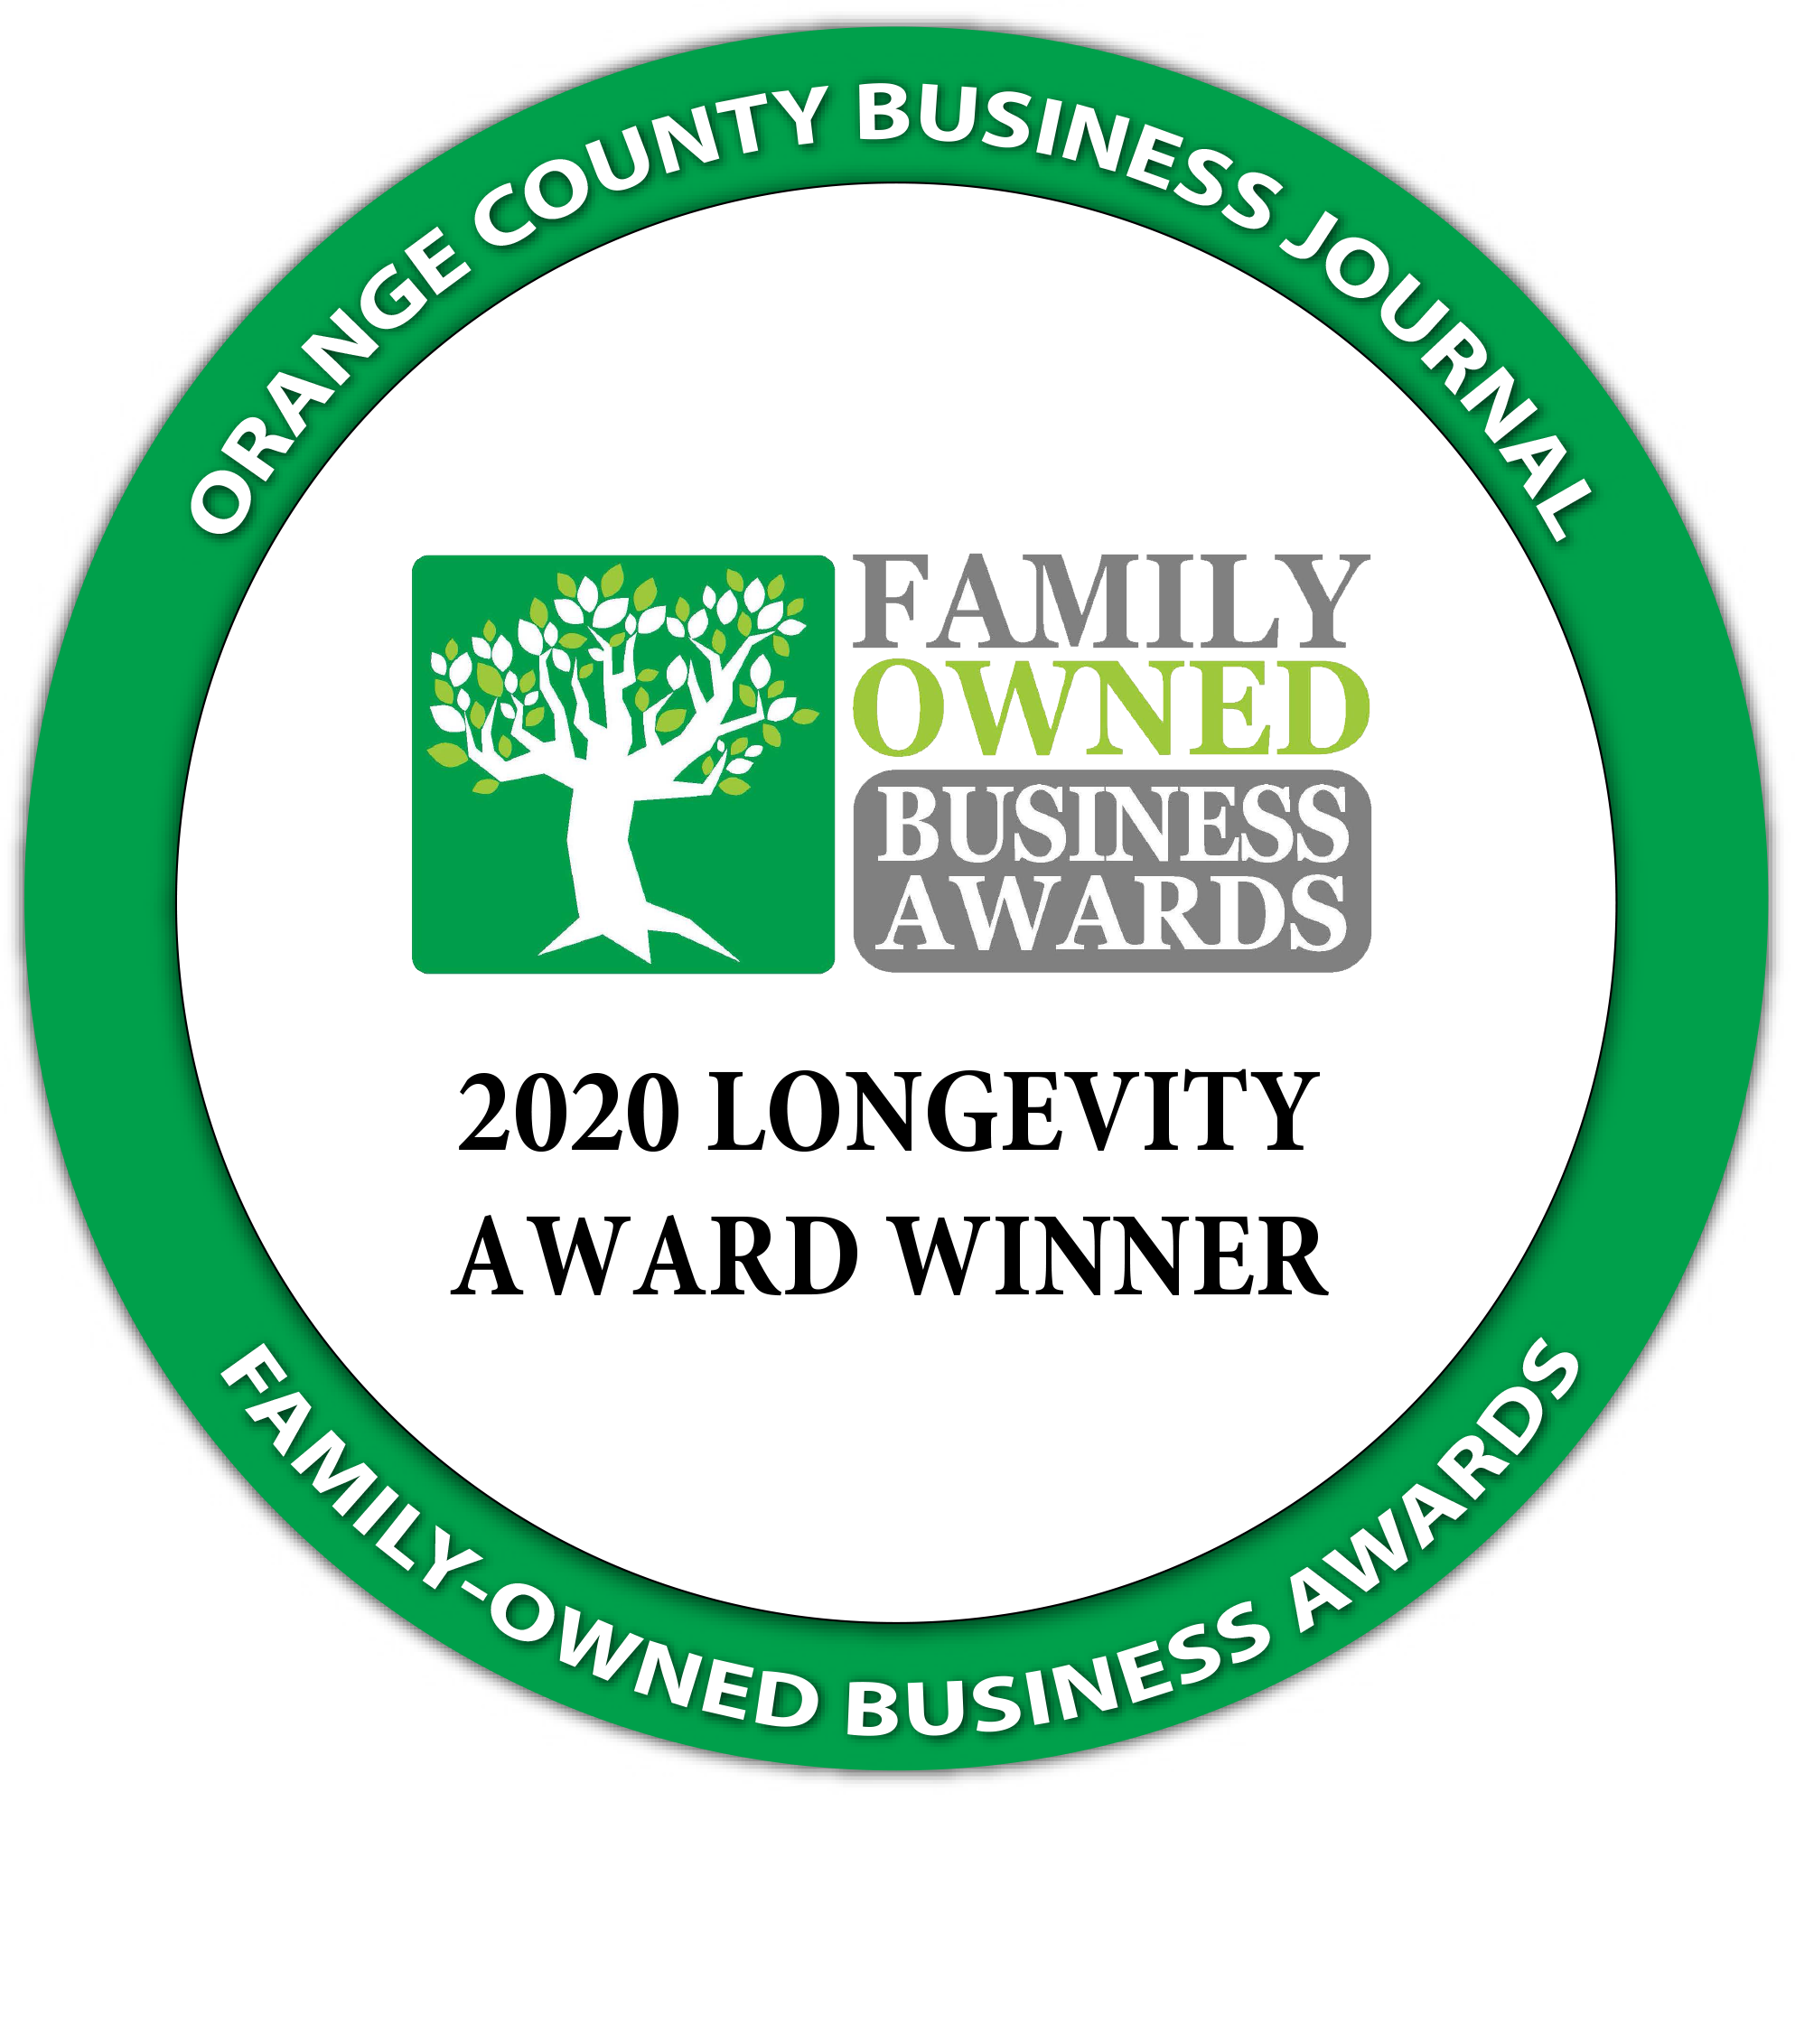 橙县商业杂志的2020年最高家族企业寿命奖